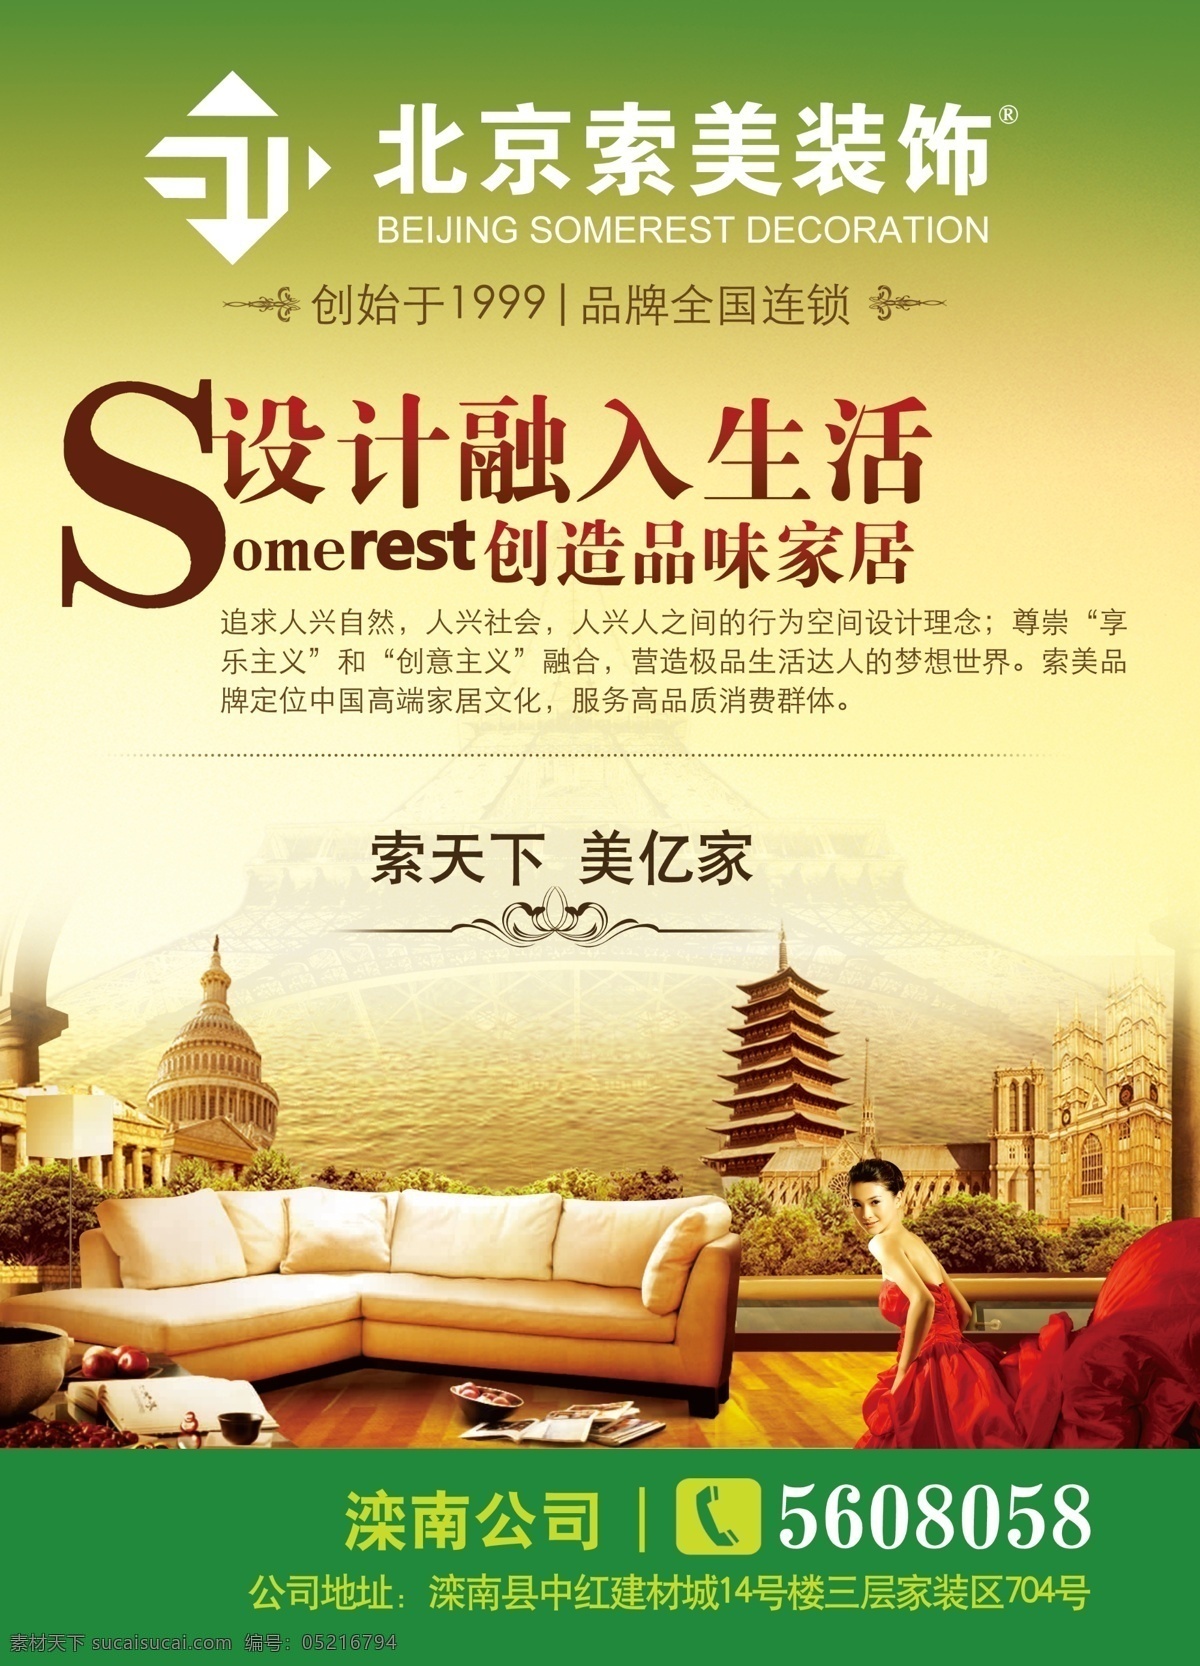 北京索美装饰 索美 装饰 建筑 美女 沙发宣传 广告设计模板 源文件